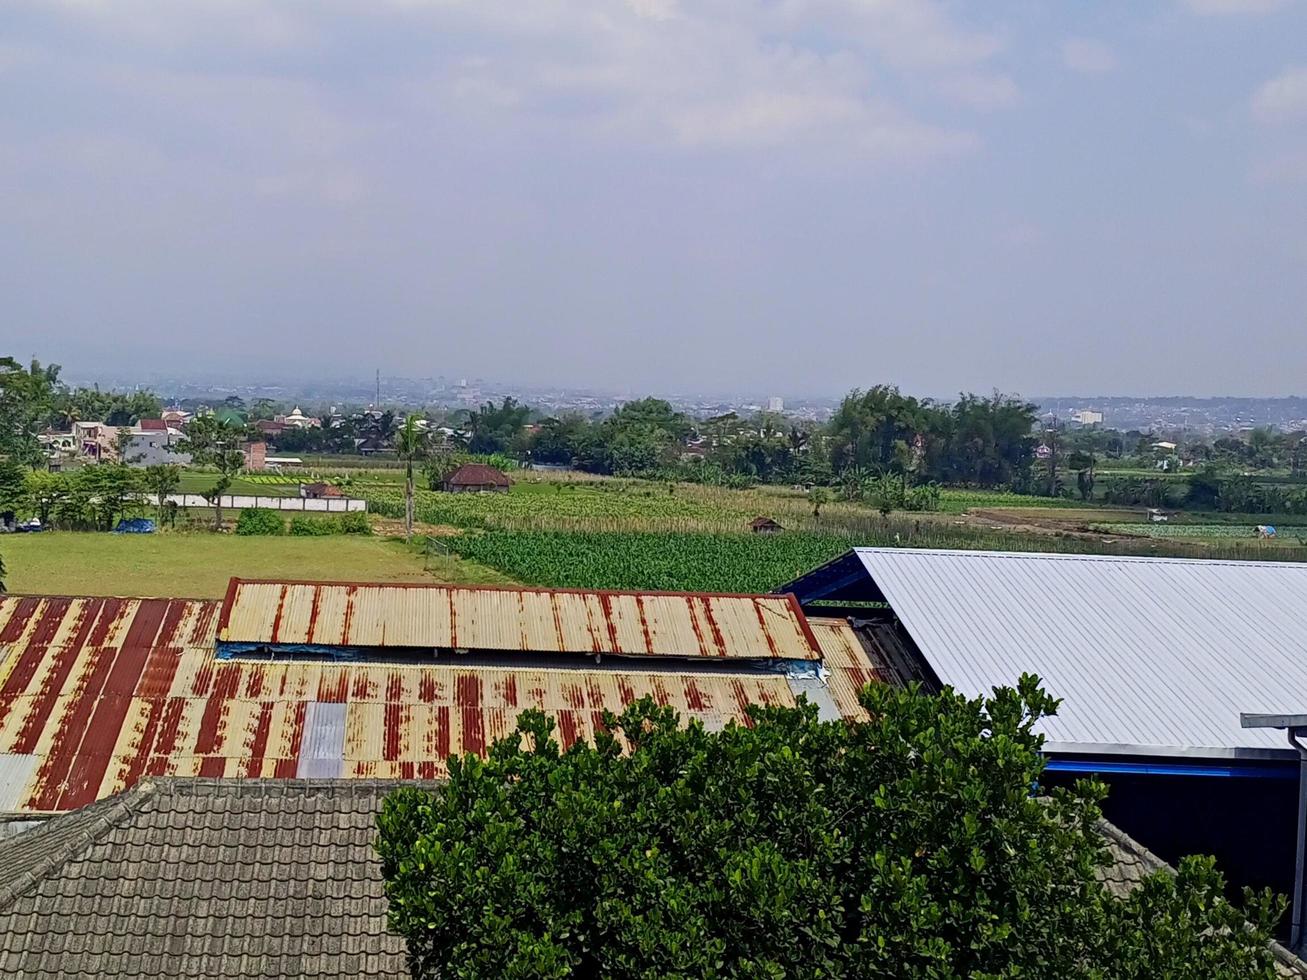 vista de los campos de arroz y el cielo tomada desde la parte superior del edificio del quinto piso foto